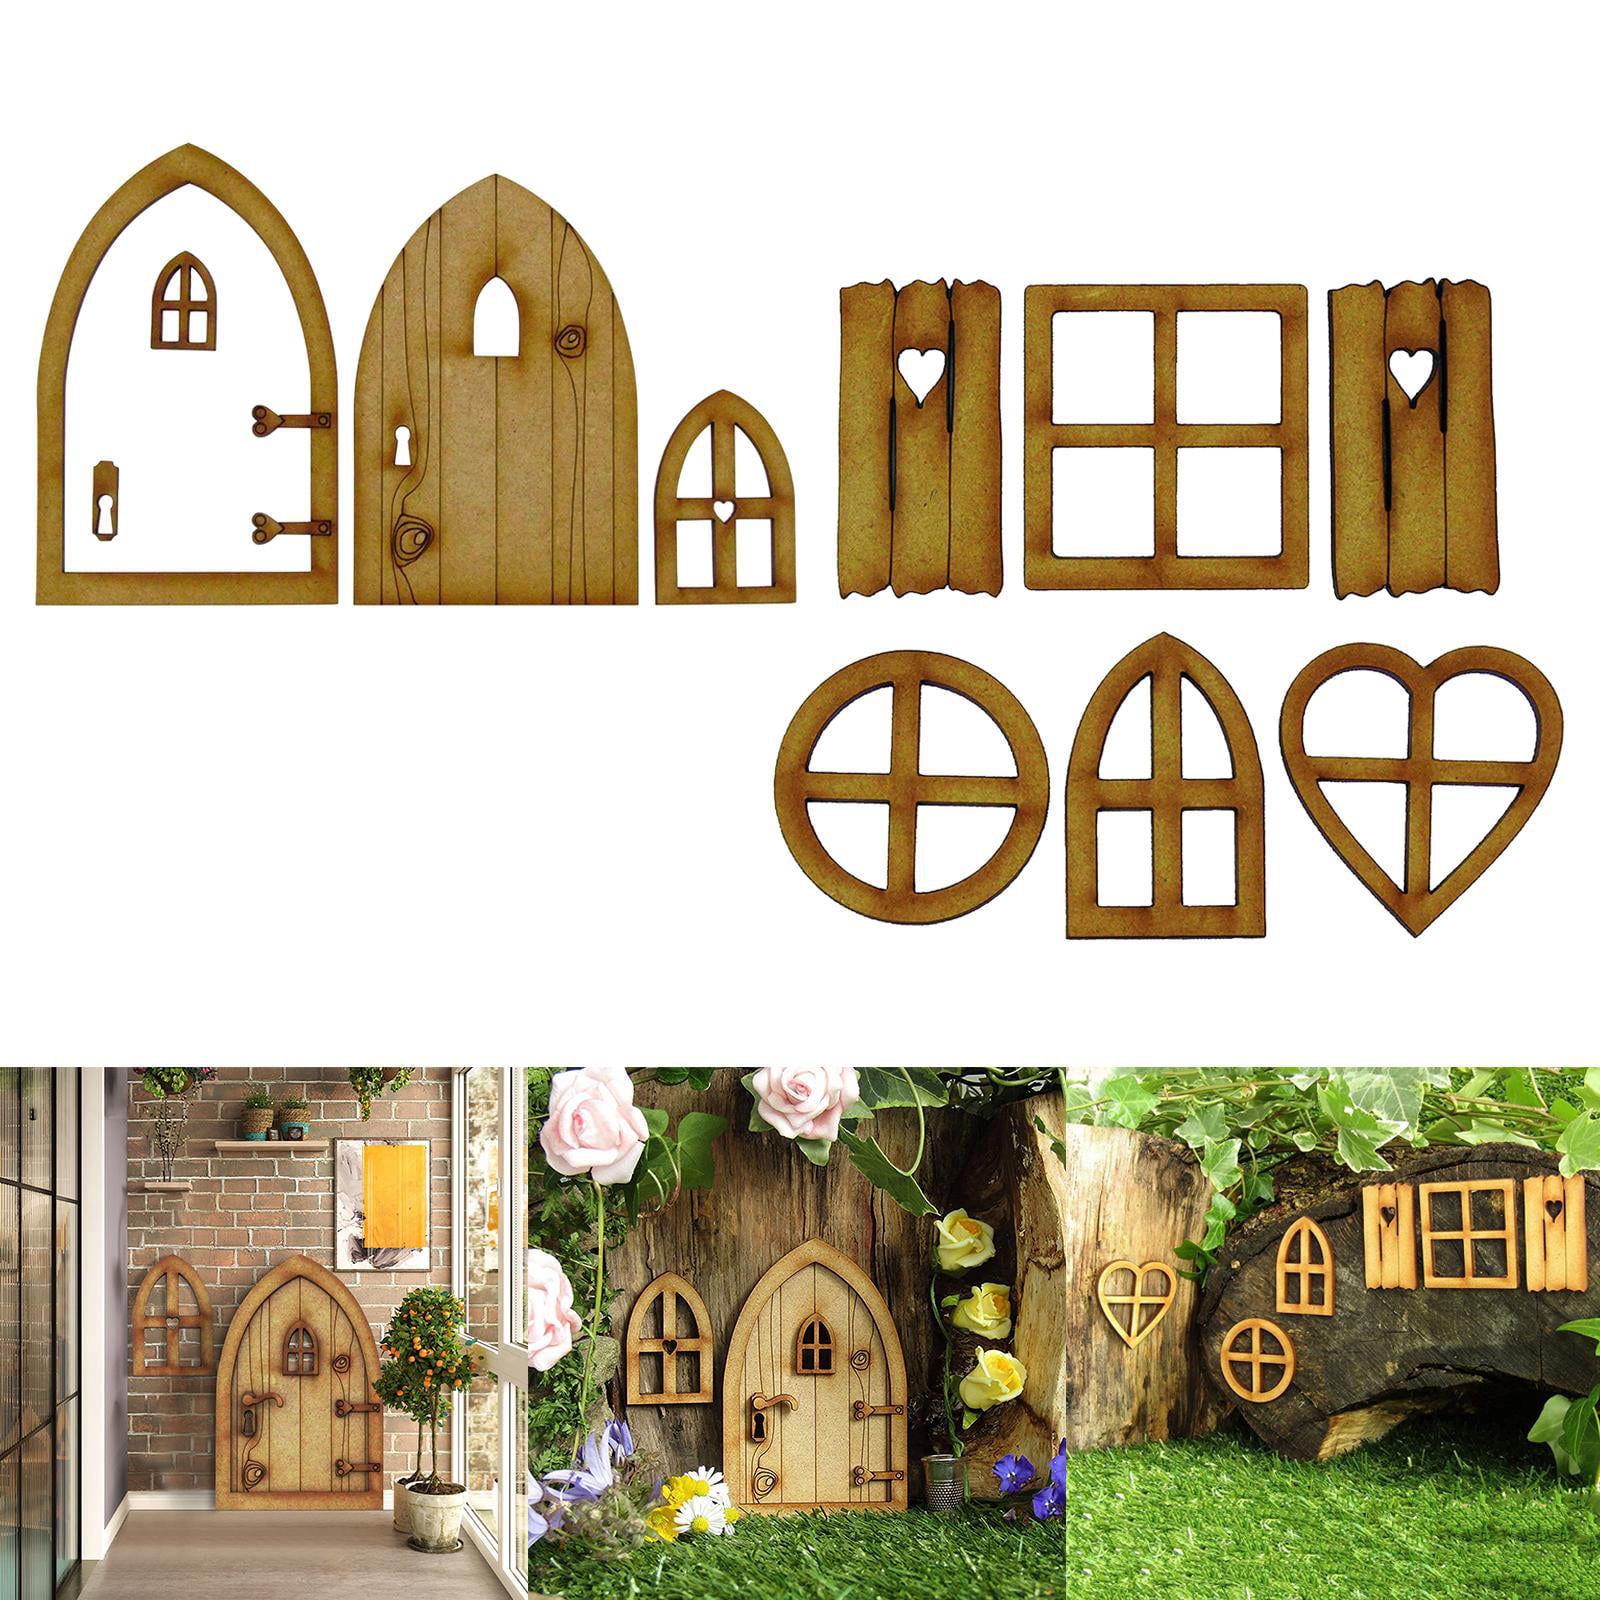 Puerta marrón pintado a mano Puertas de hadas y elfos de jardín caprichosas Detalles encantadores Decoración de jardín miniatura para exteriores 